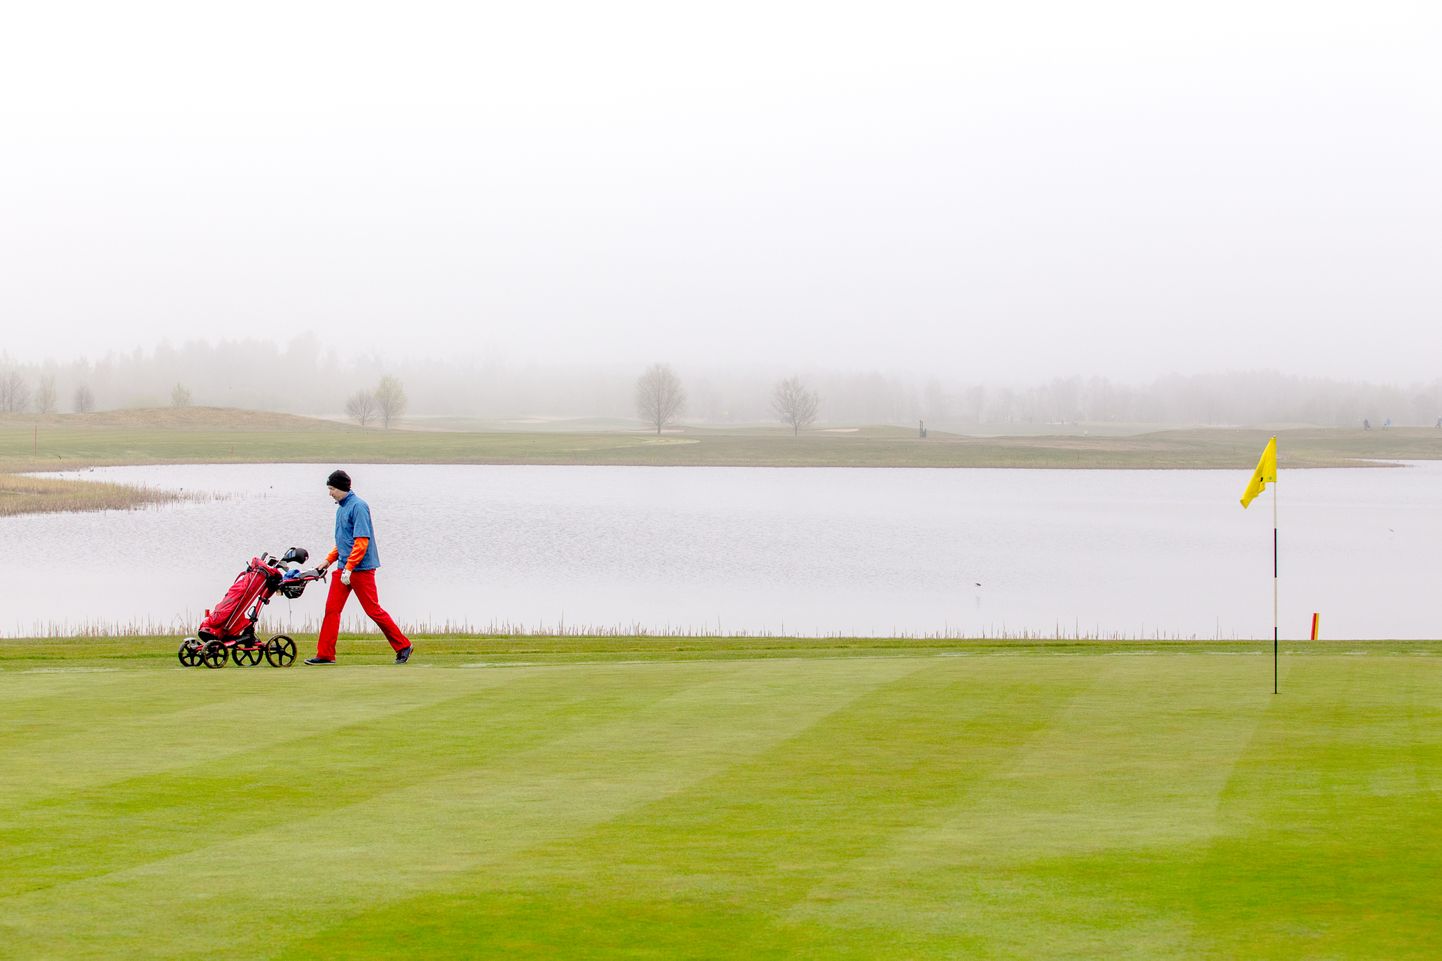 Kaido Koppel Pärnu linnavalitsusest leiab, et Audru golfi puhul on õiglane praktika, kus ärihooned asuvad ärimaal ja mänguväljakud üldmaal, sest sealsel murul võib mängijaid segamata jalutada igaüks.